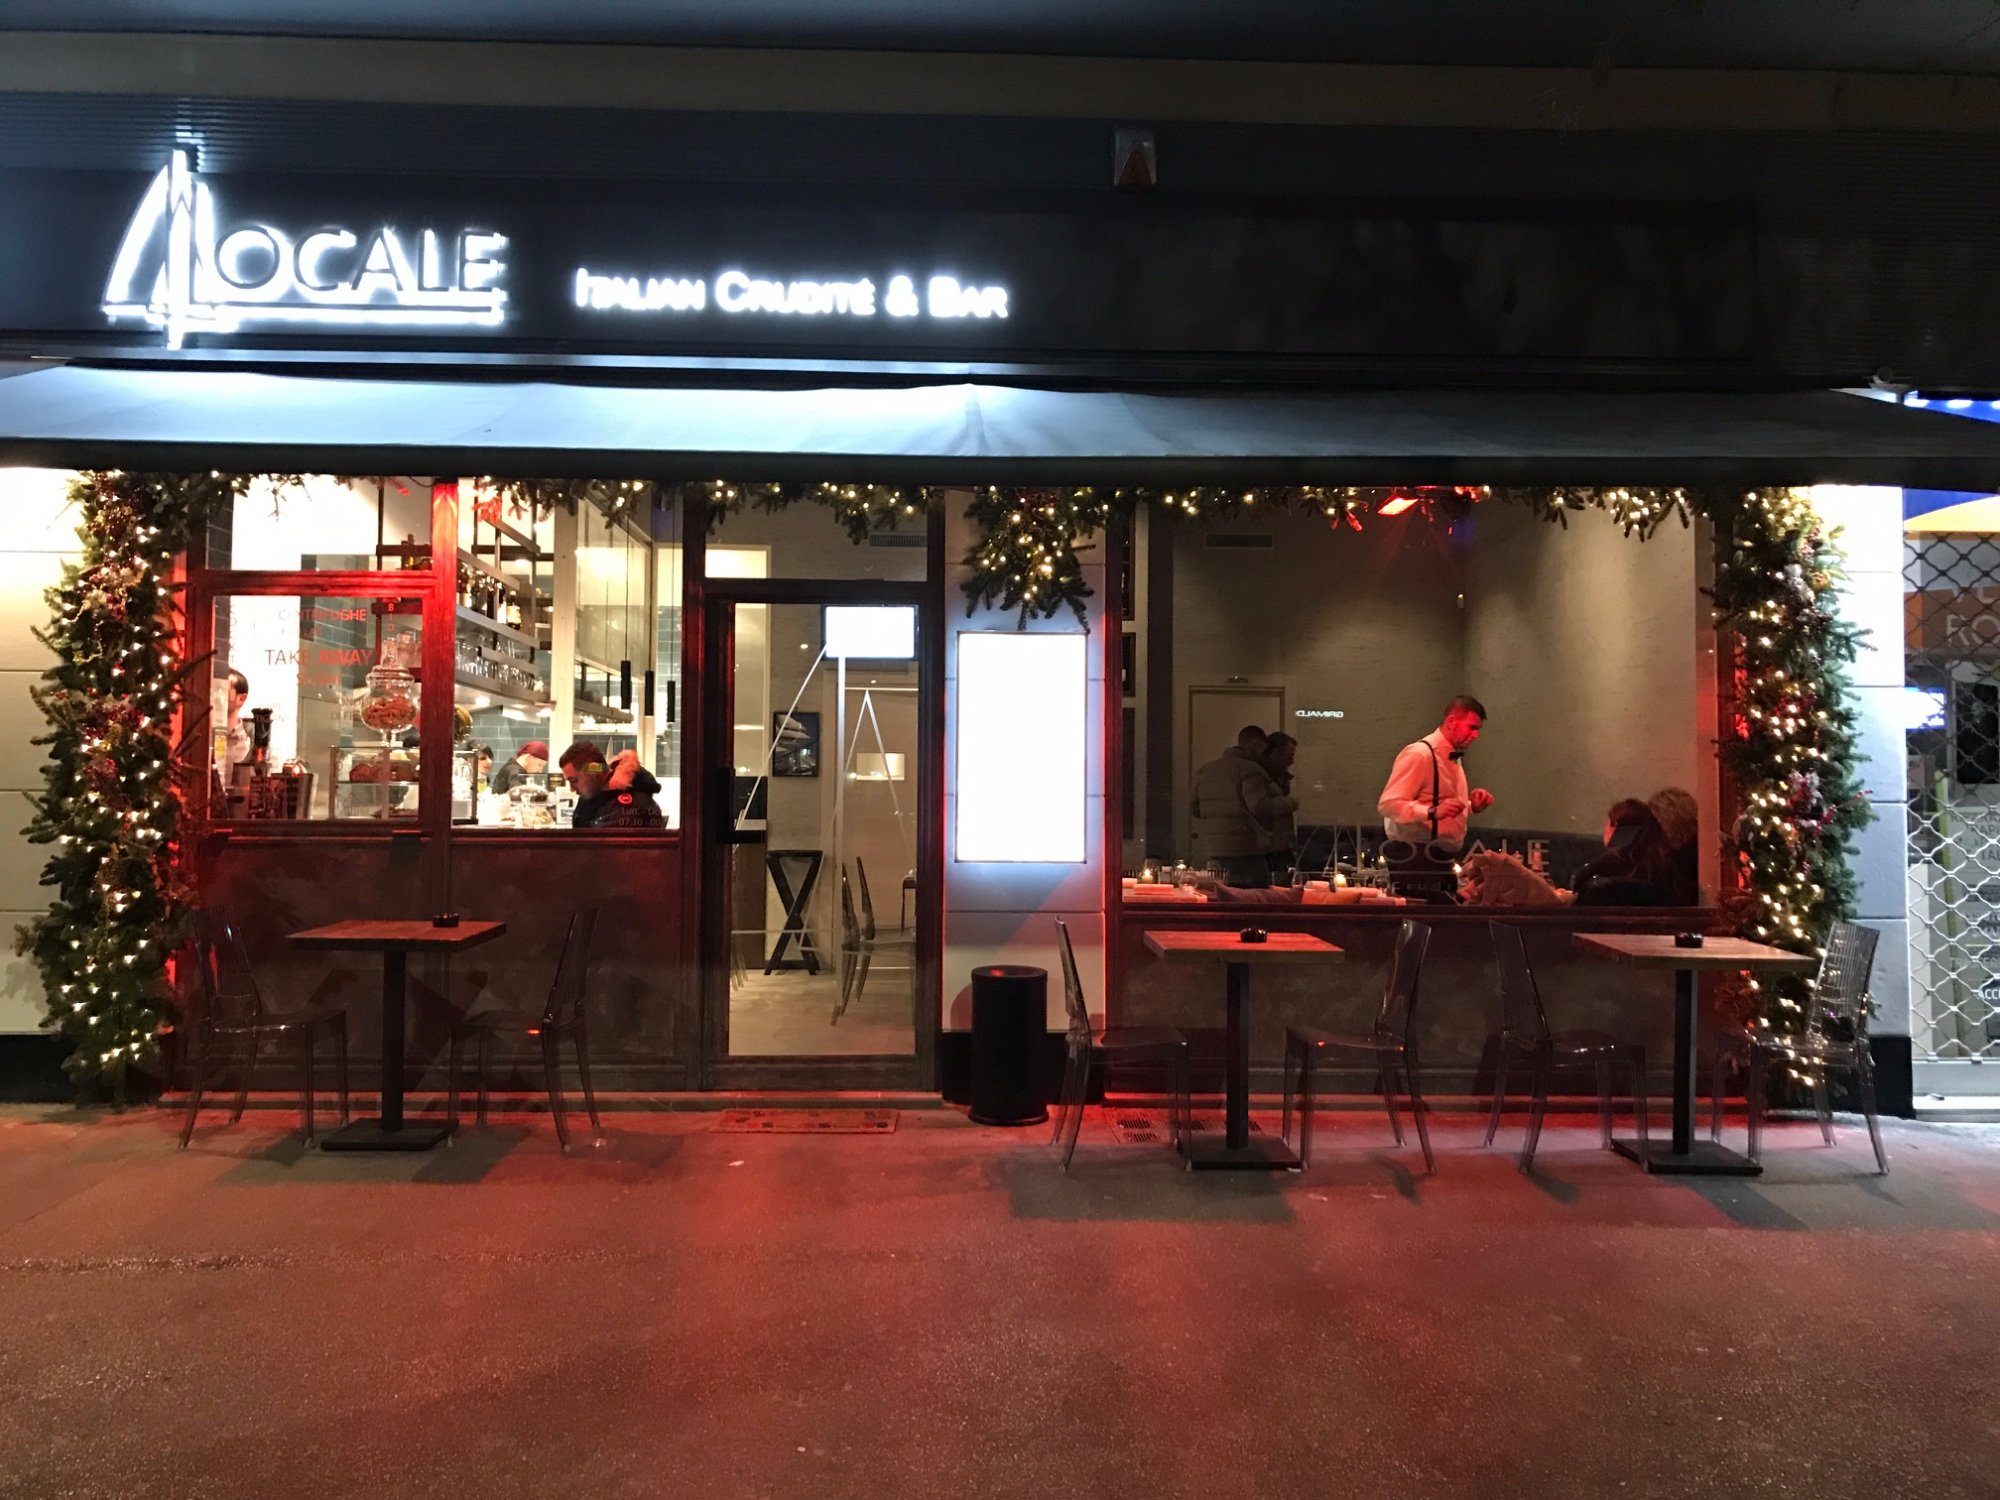 Locale - Italian Cruditè & Bar, Roma